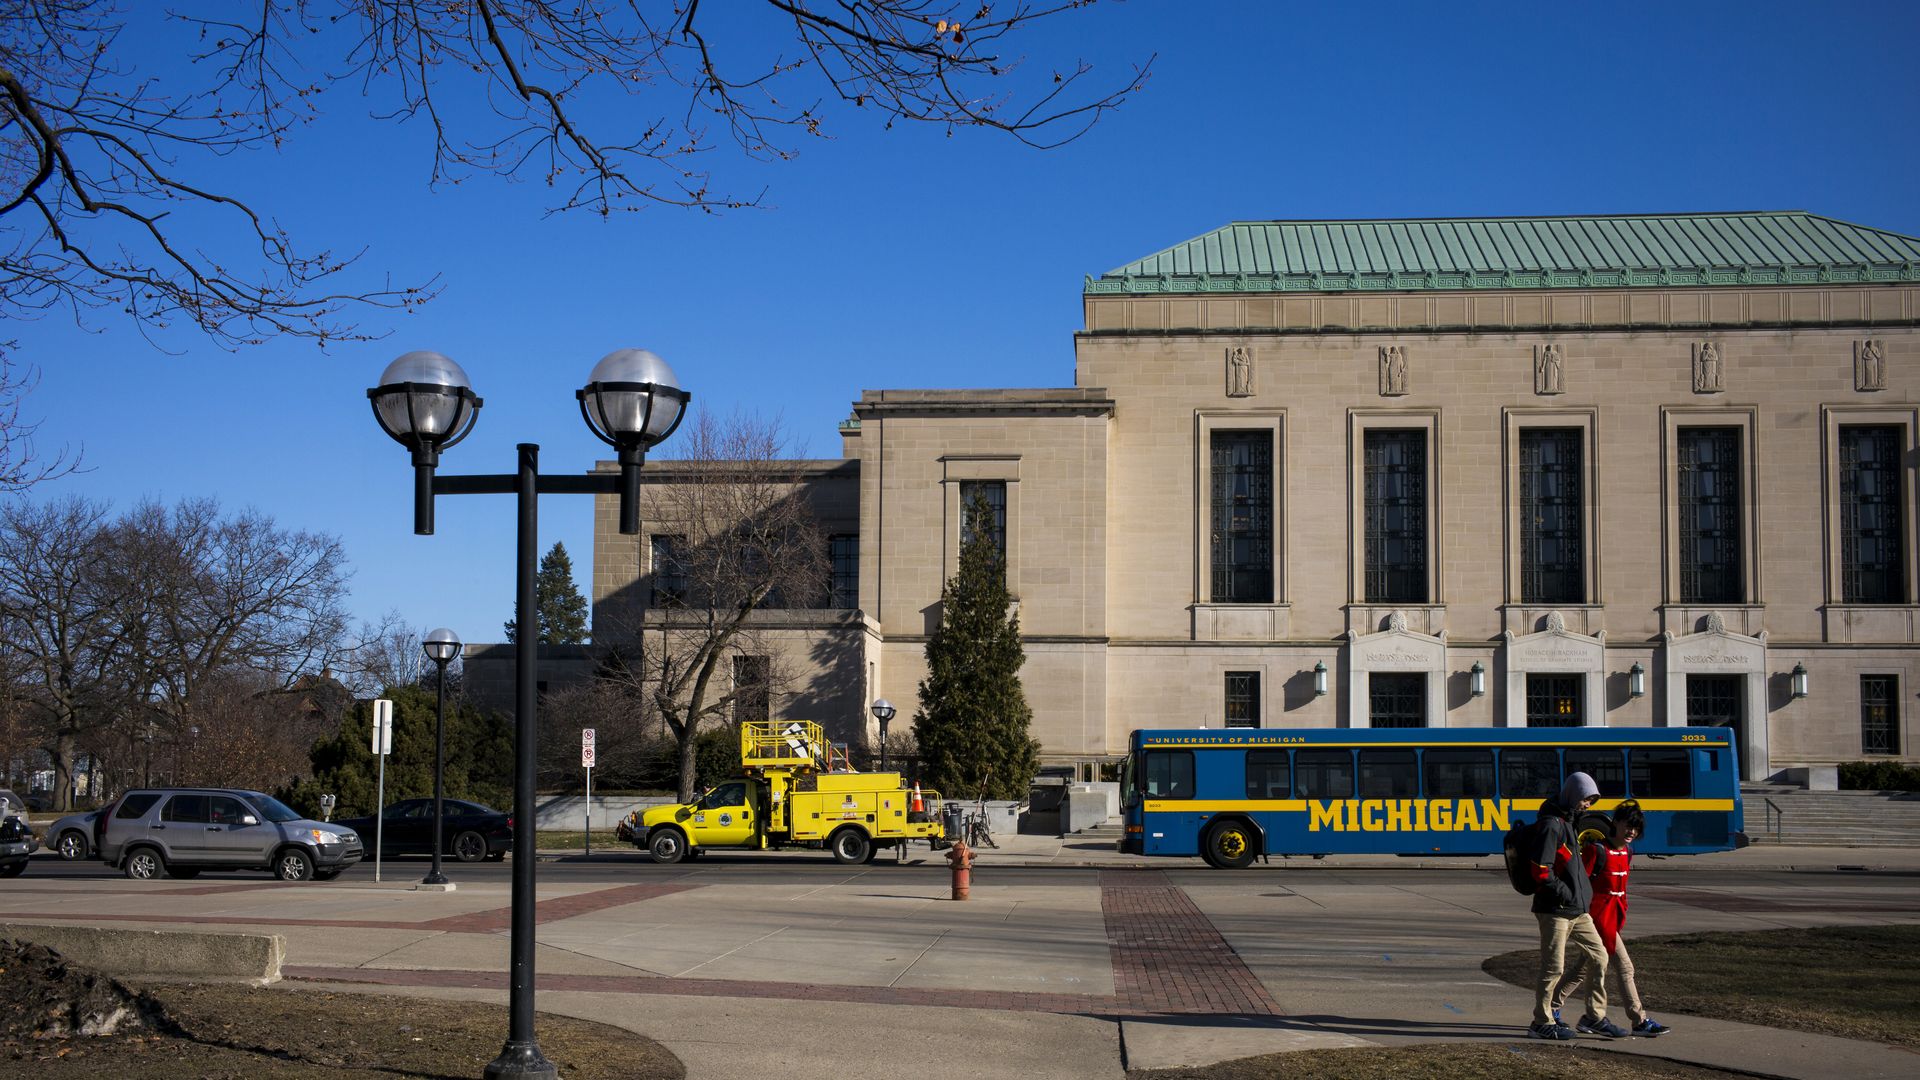 Michigan University's campus